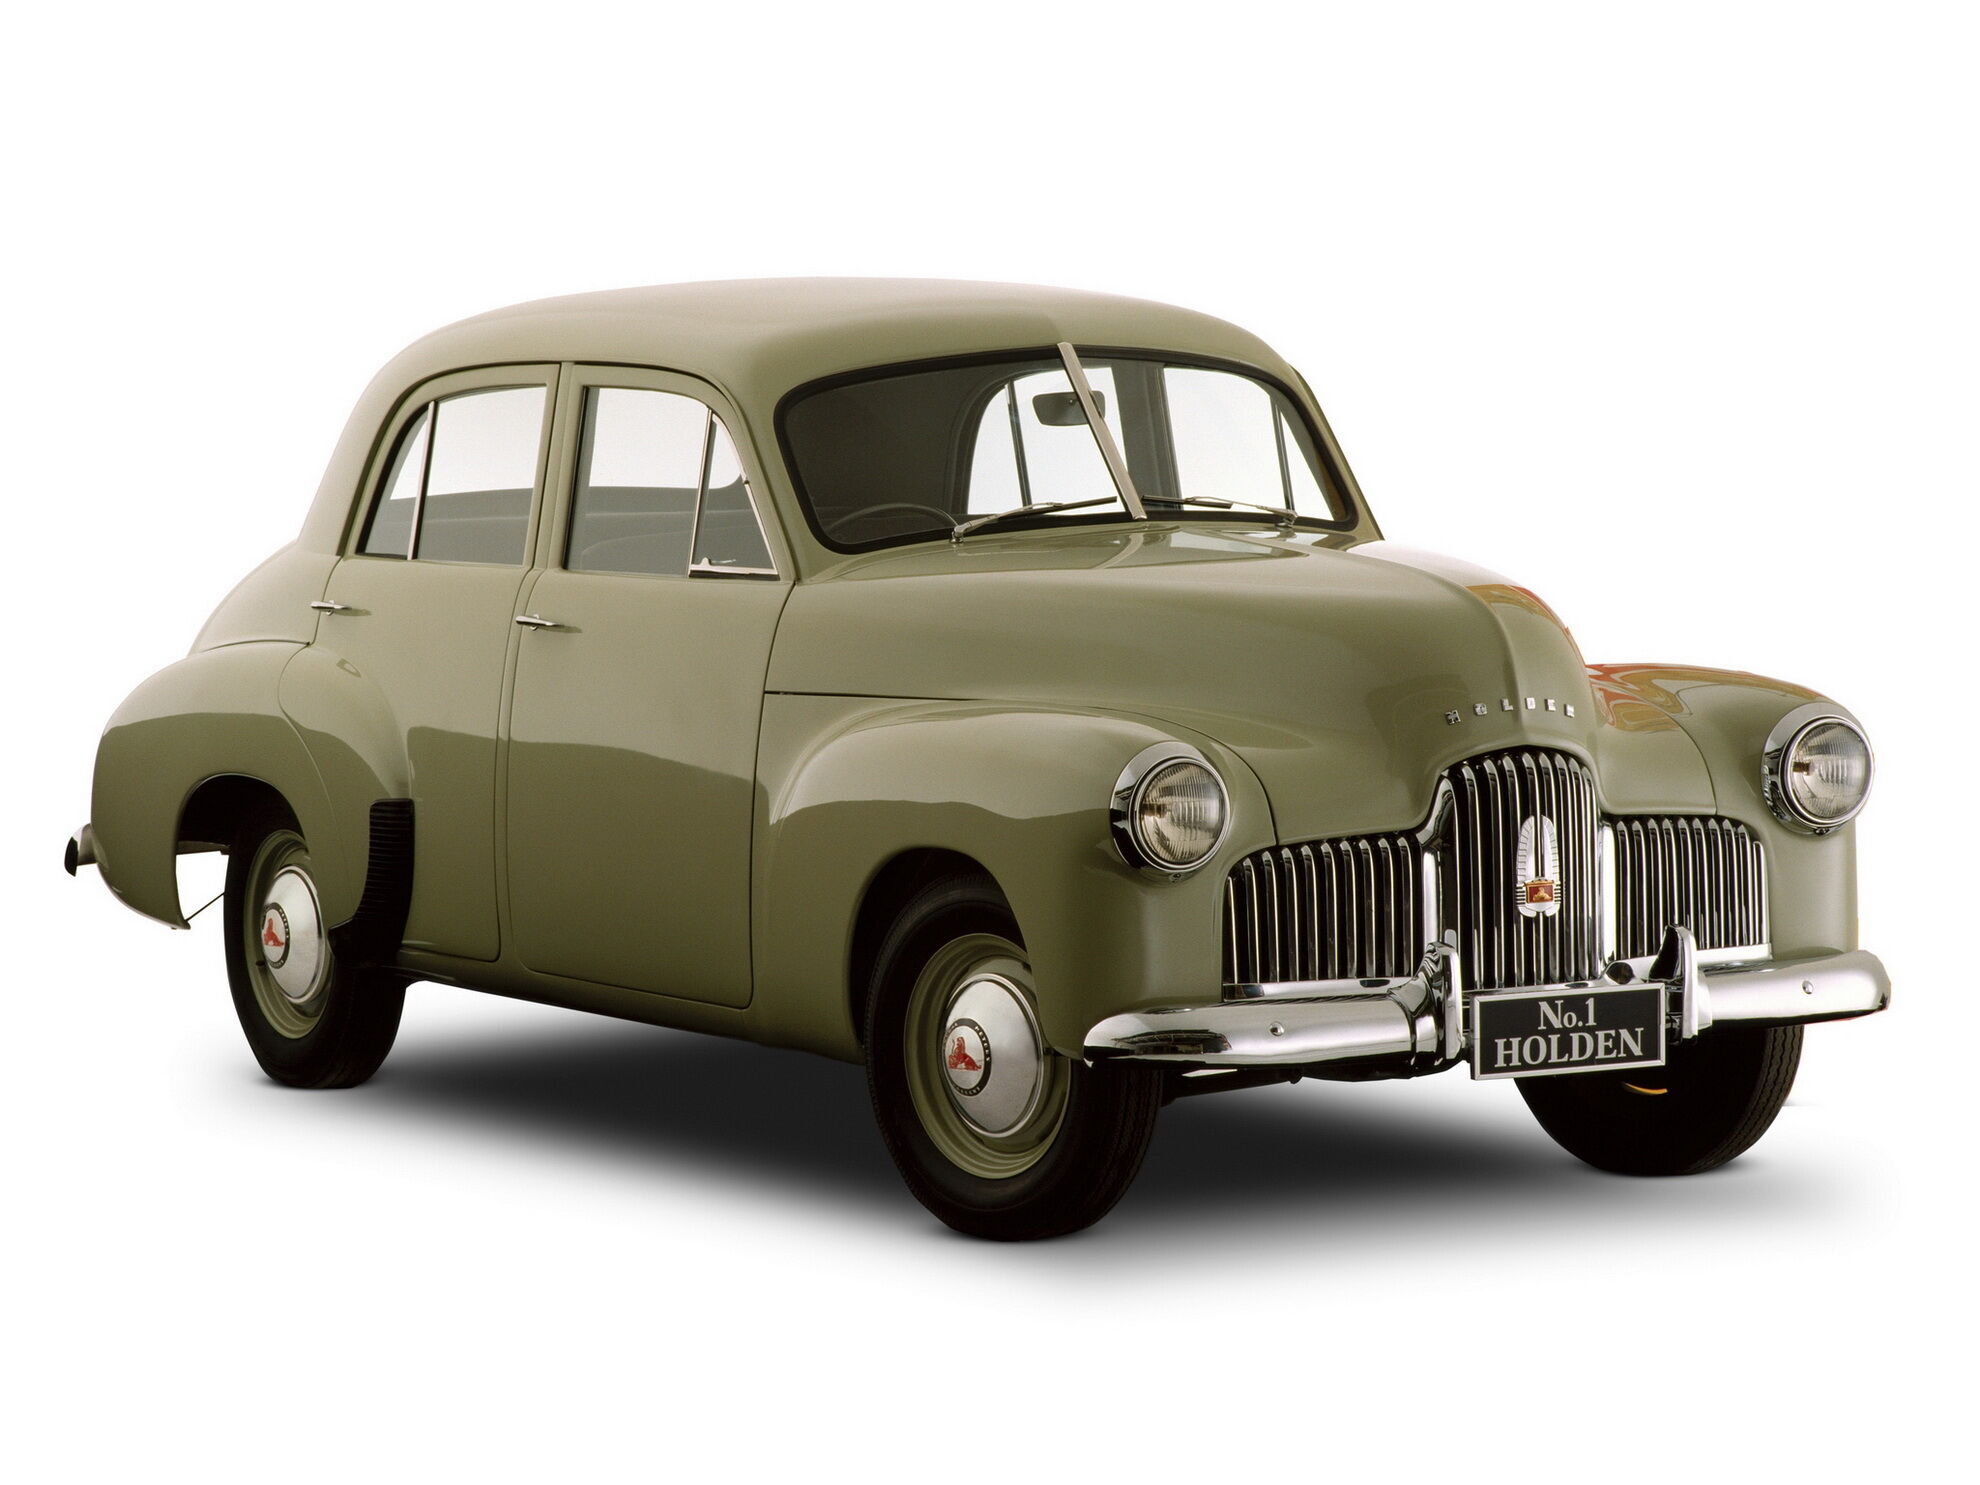 Перший серійний автомобіль Holden моделі 48-215 побачив світло у 1948 році